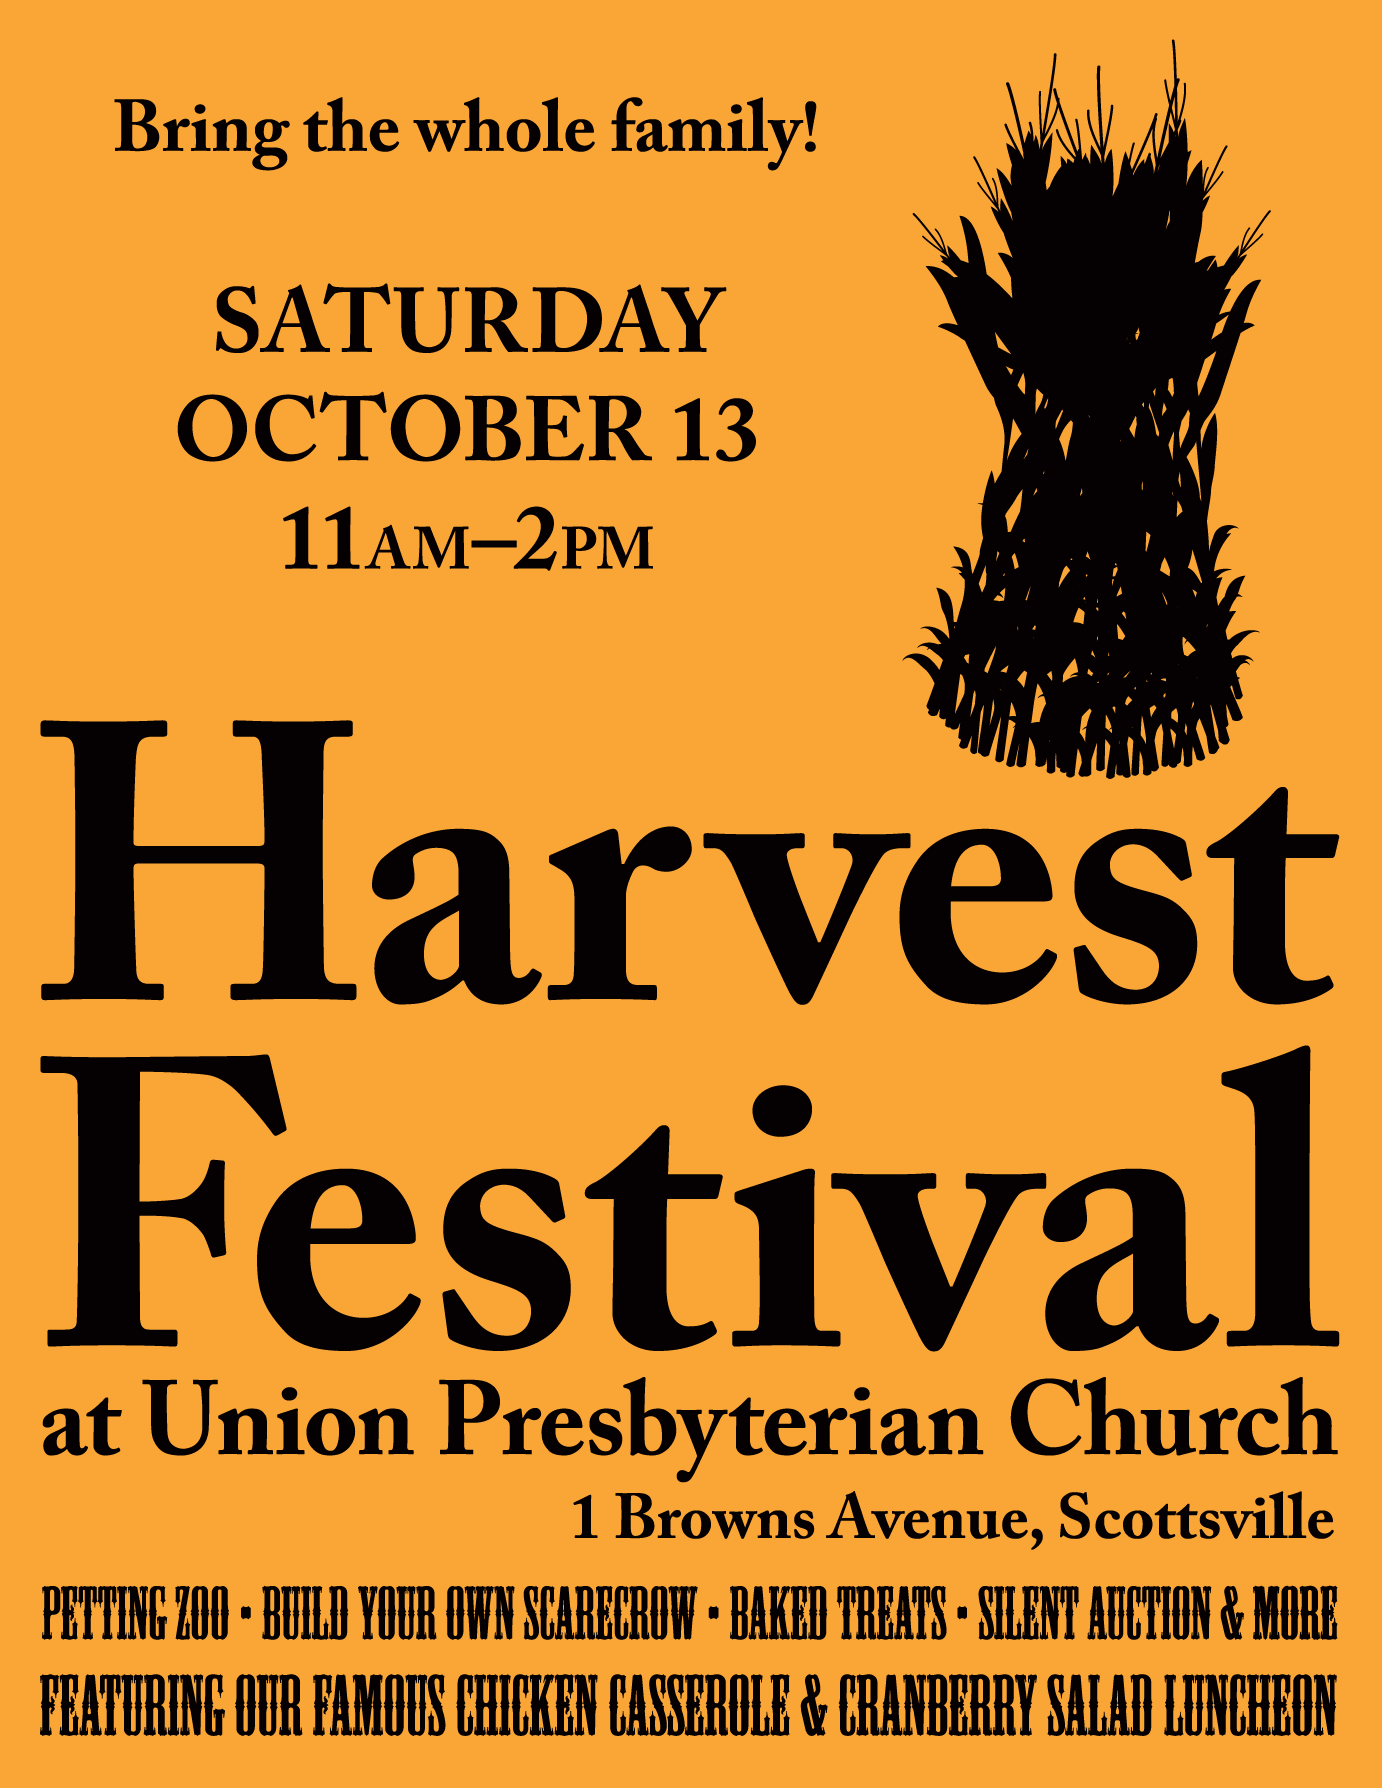 Harvestfestival 1.